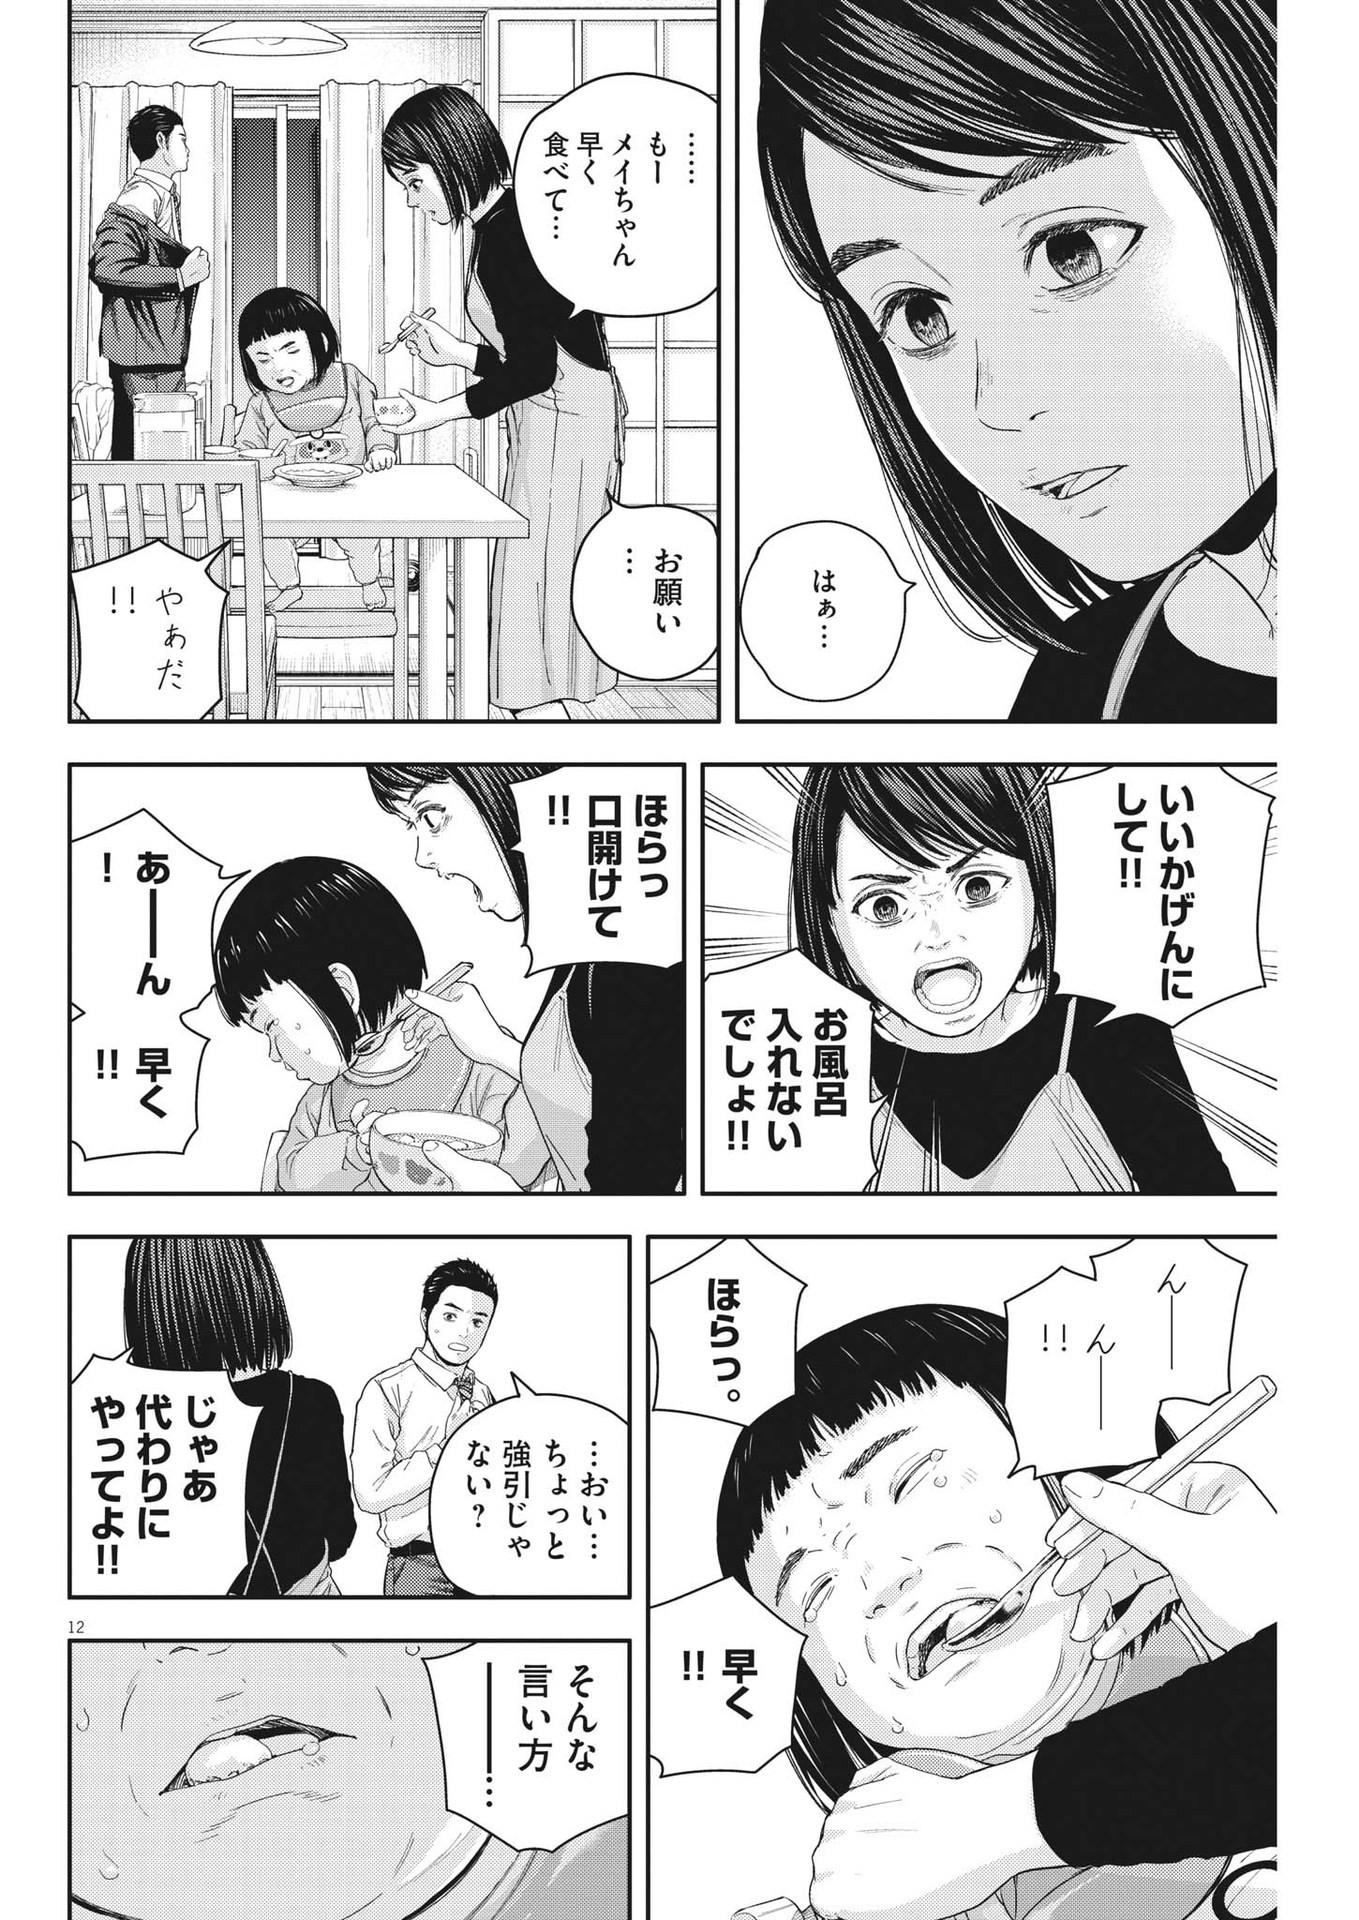 Yumenashi-sensei no Shinroshidou - Chapter 23 - Page 12